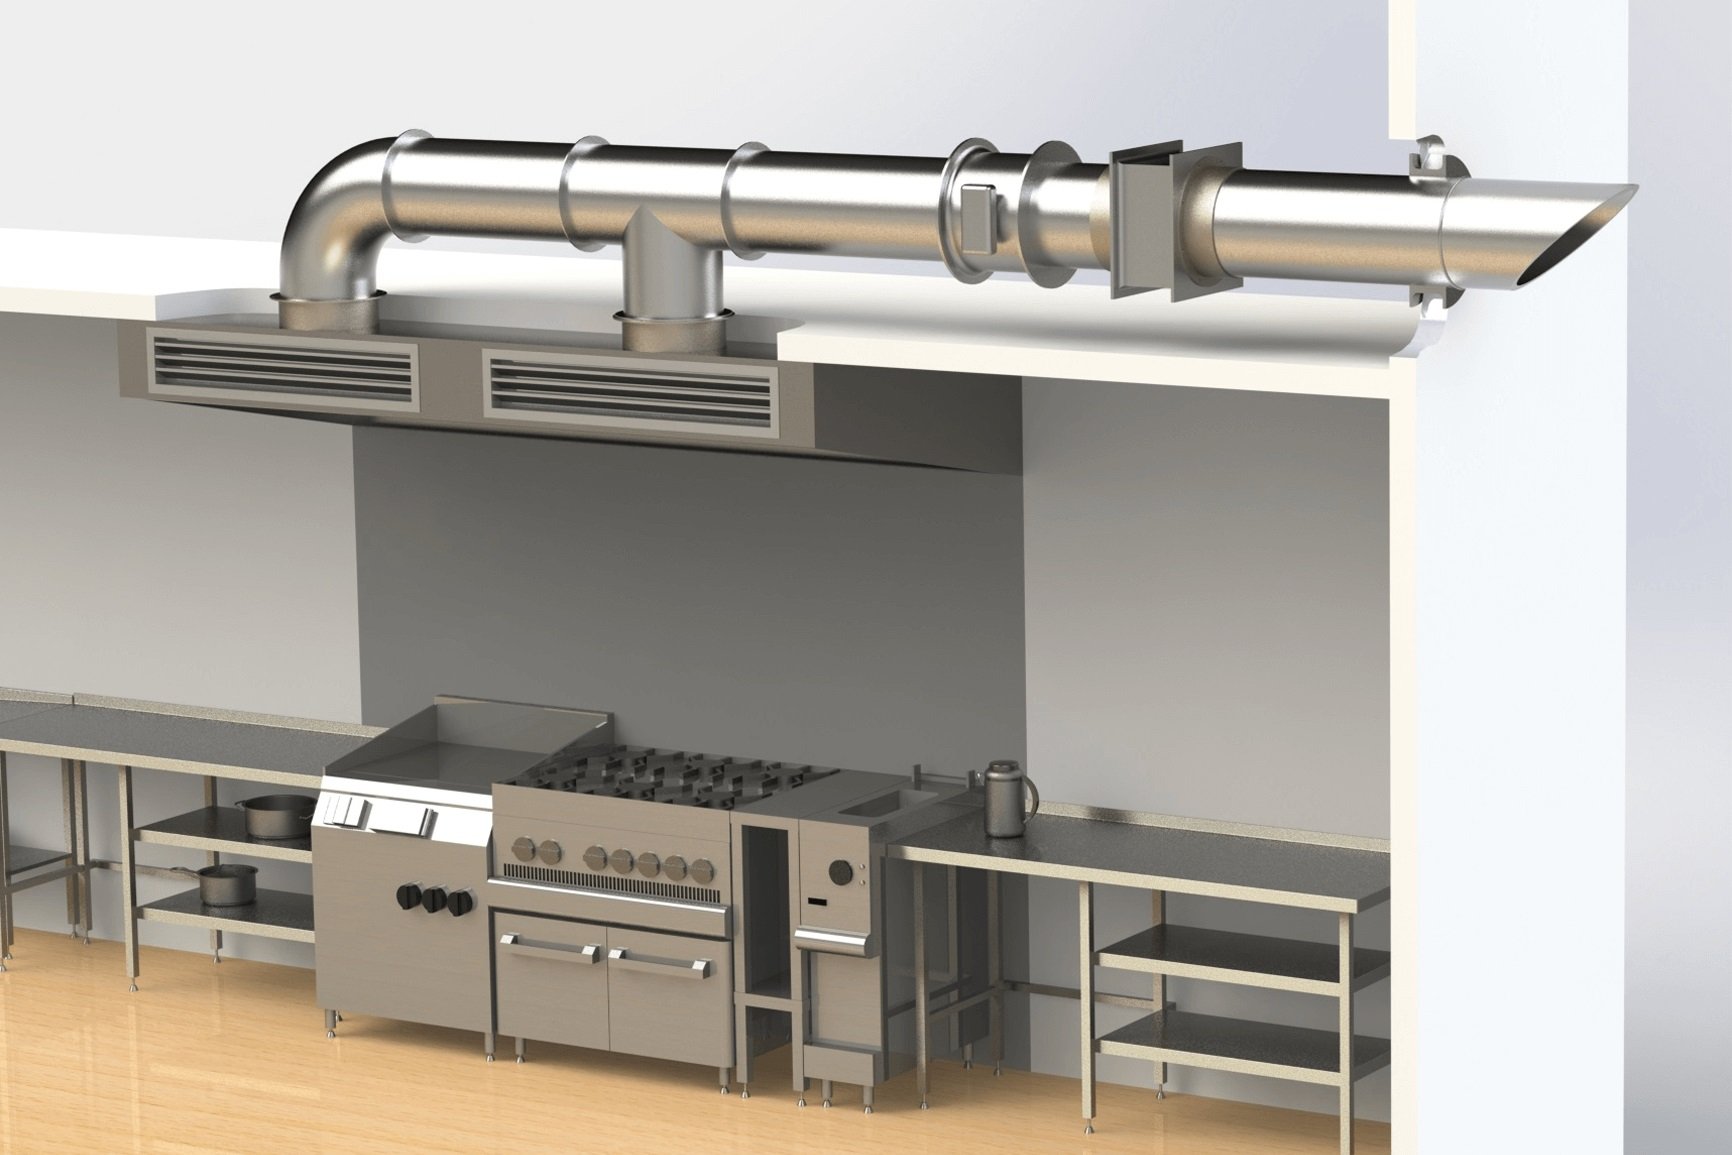 Кухонные вентиляционные вытяжки. Система вентиляции для вытяжки. Вытяжная вентиляция для кухни. Приточно-вытяжная вентиляция на кухне. Приточная вентиляция на кухне.